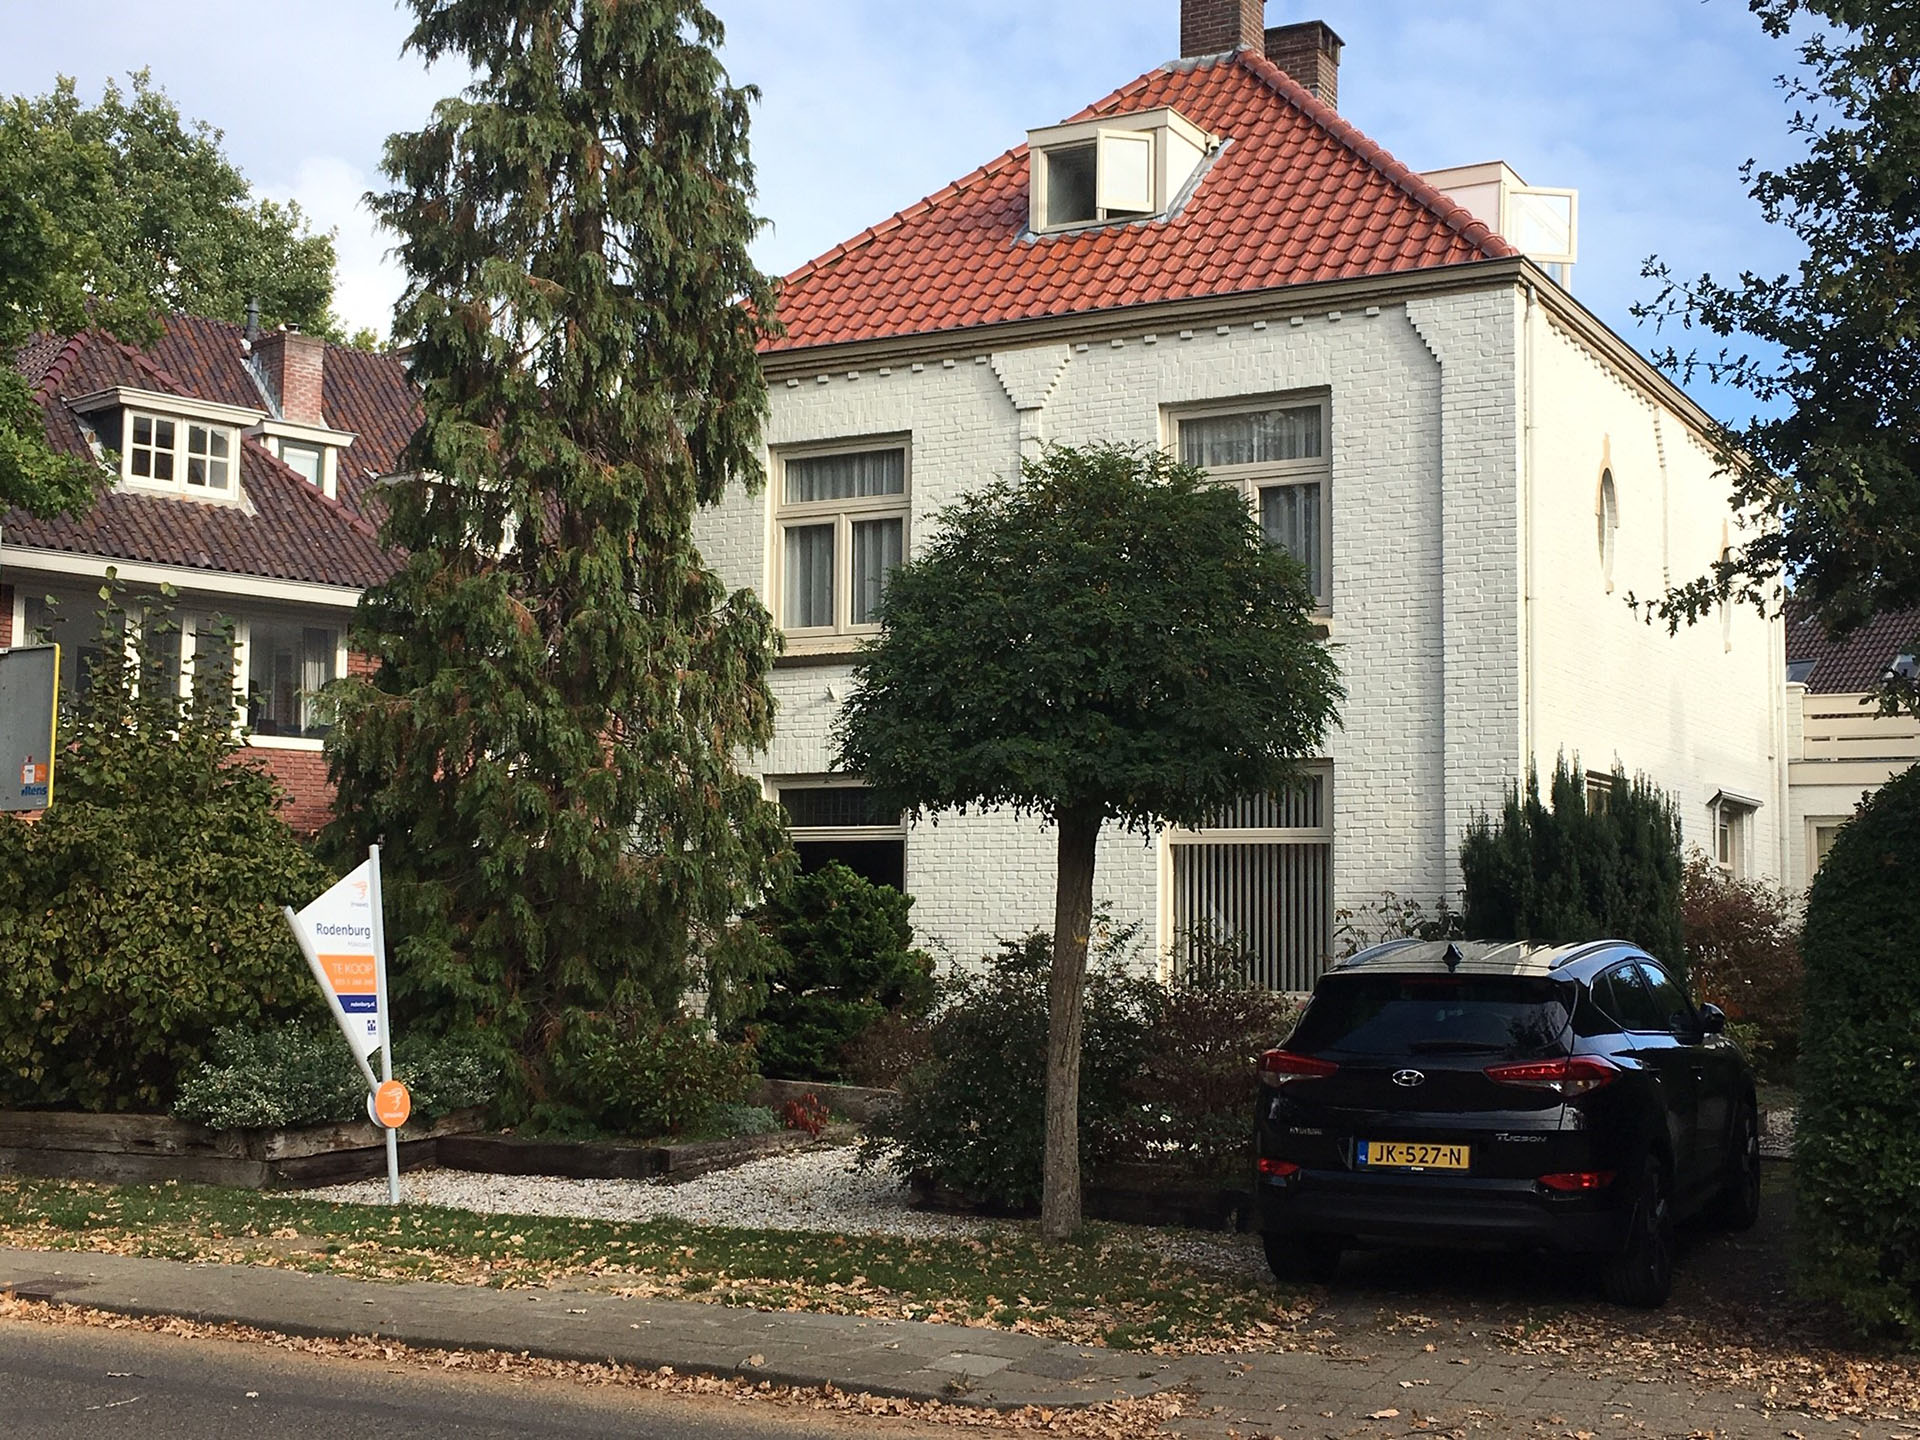 Rodenburg Makelaars: Nieuwbouw biedt weinig perspectief voor regionale woningmarkt